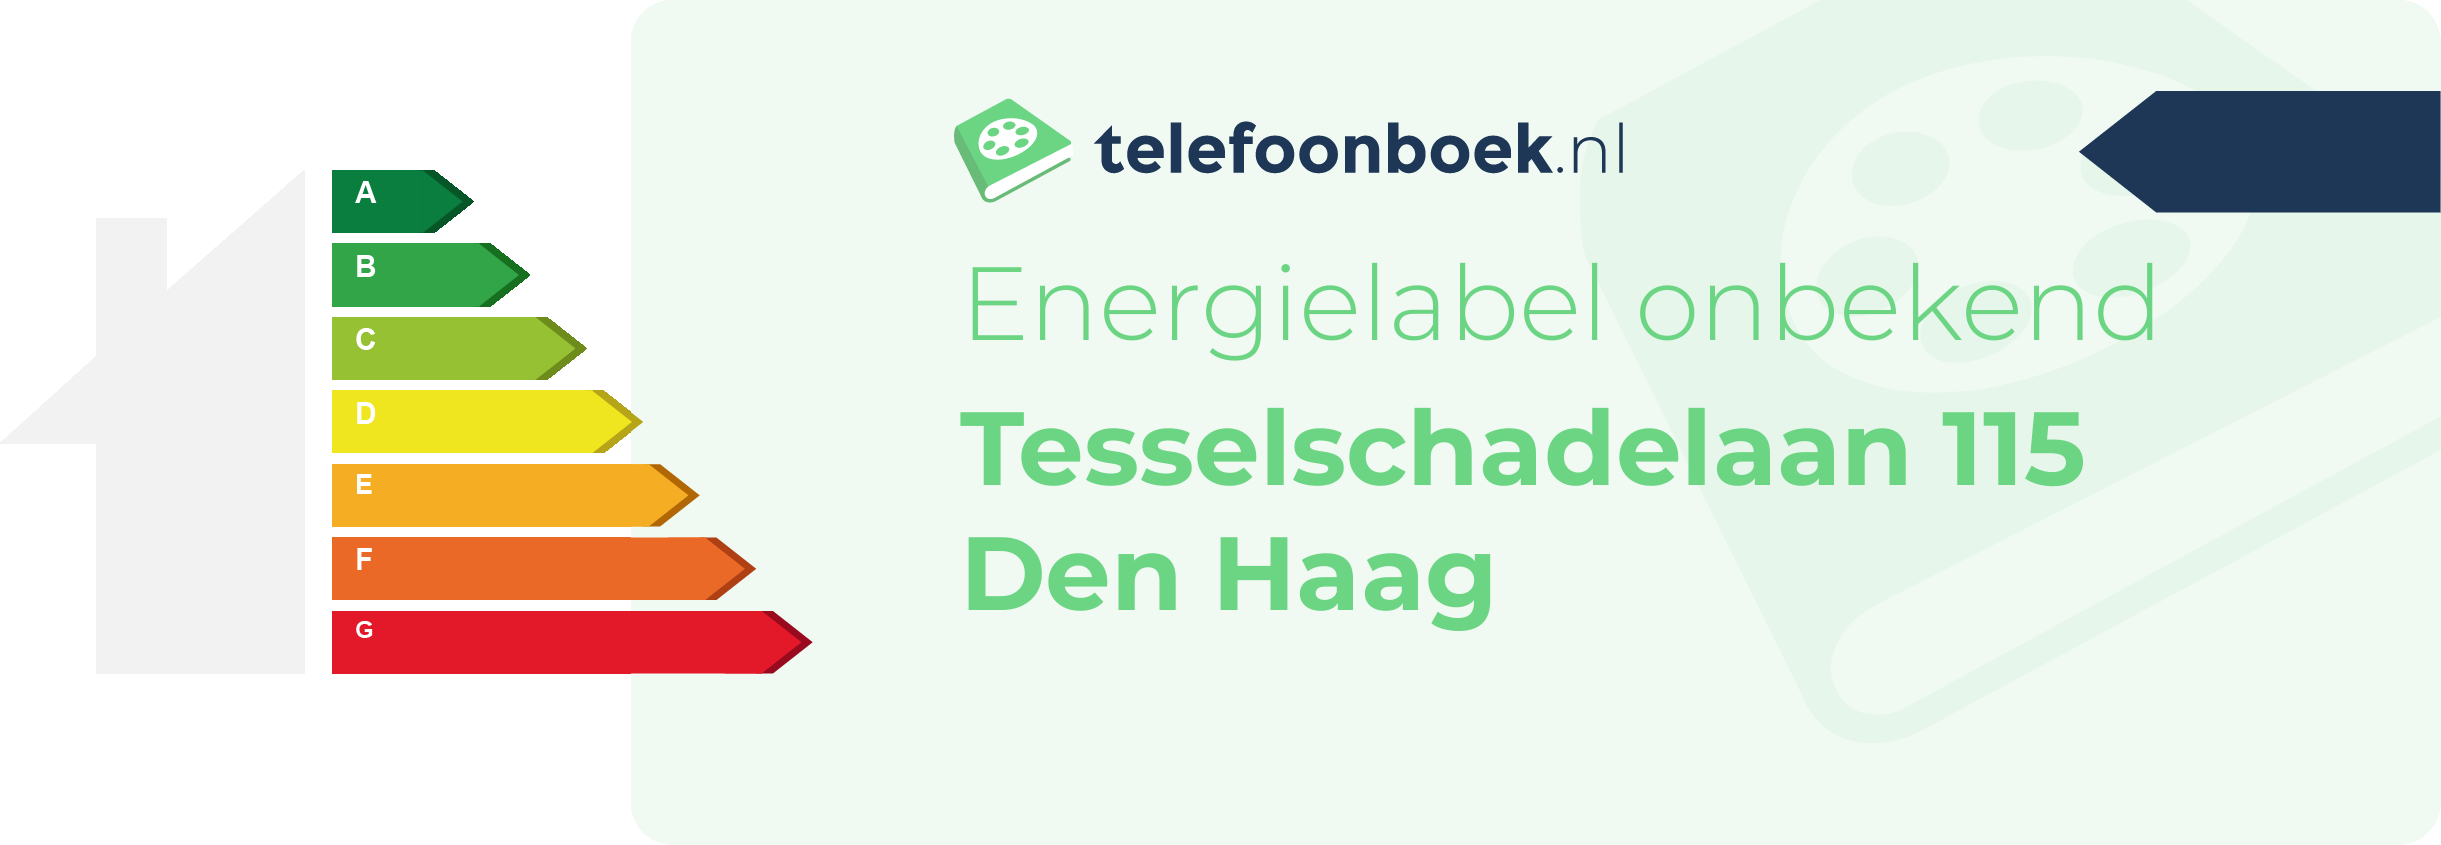 Energielabel Tesselschadelaan 115 Den Haag